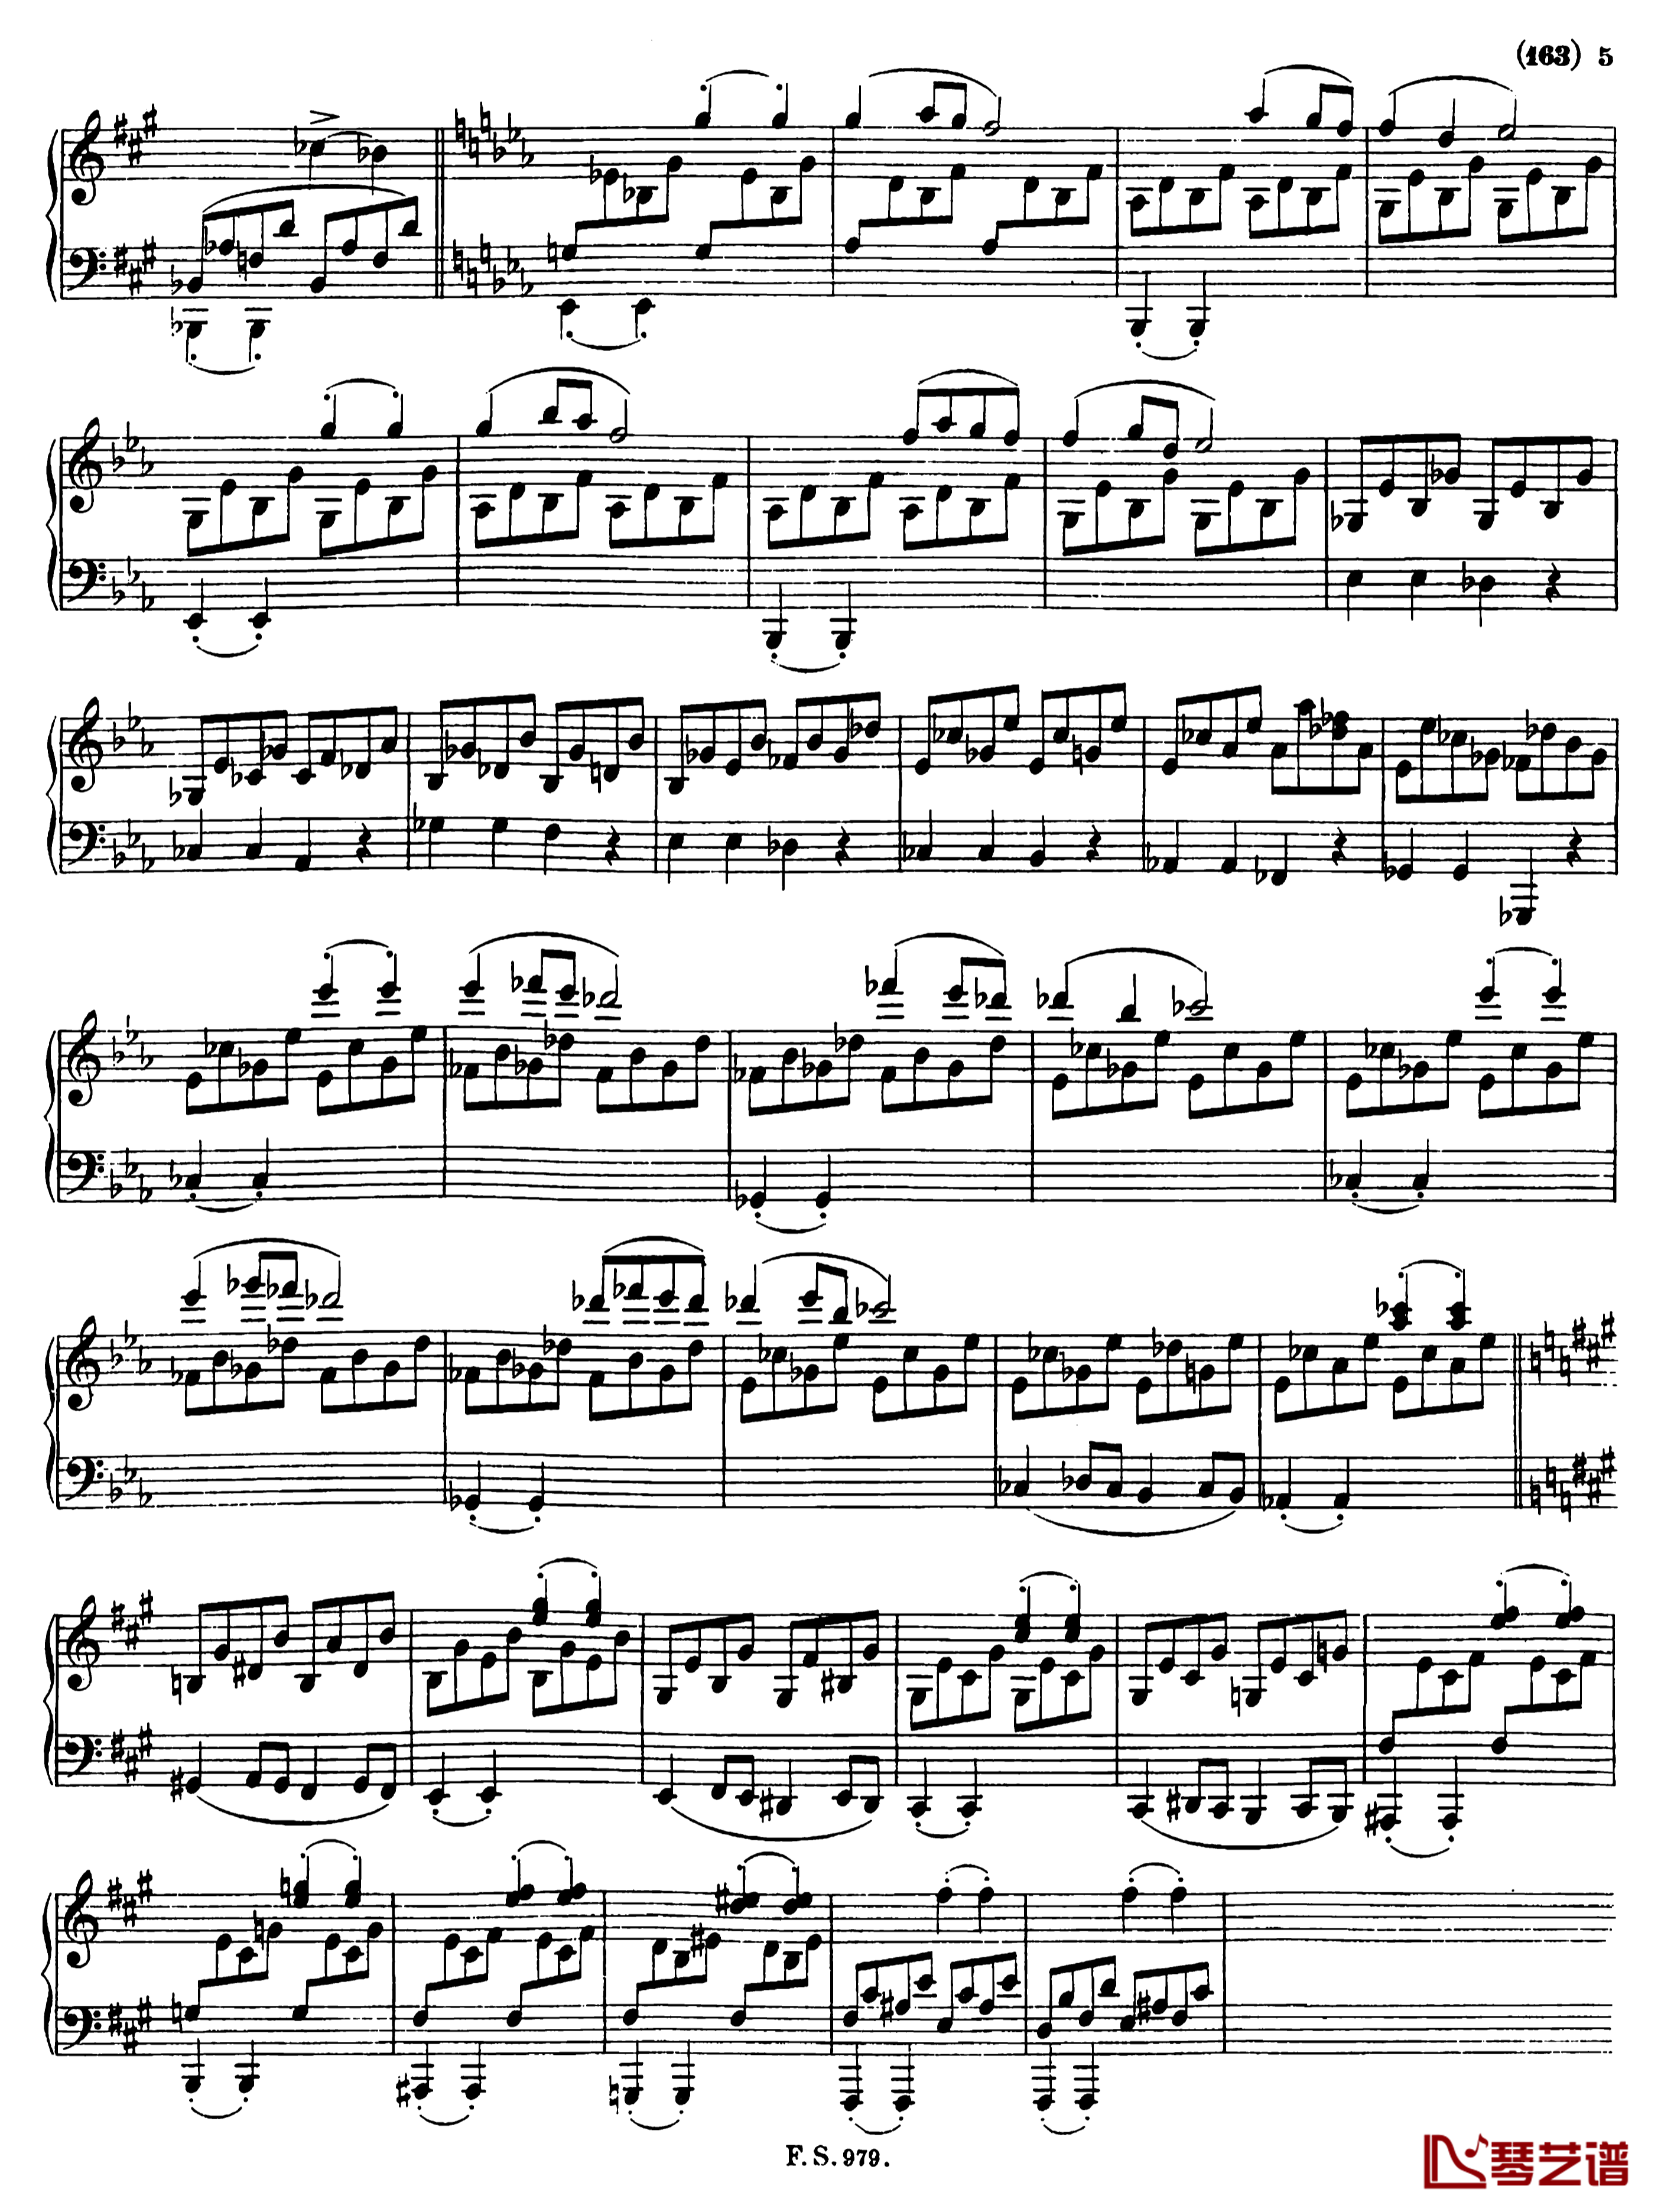 升f小调钢琴奏鸣曲D.571钢琴谱-李斯特-舒伯特